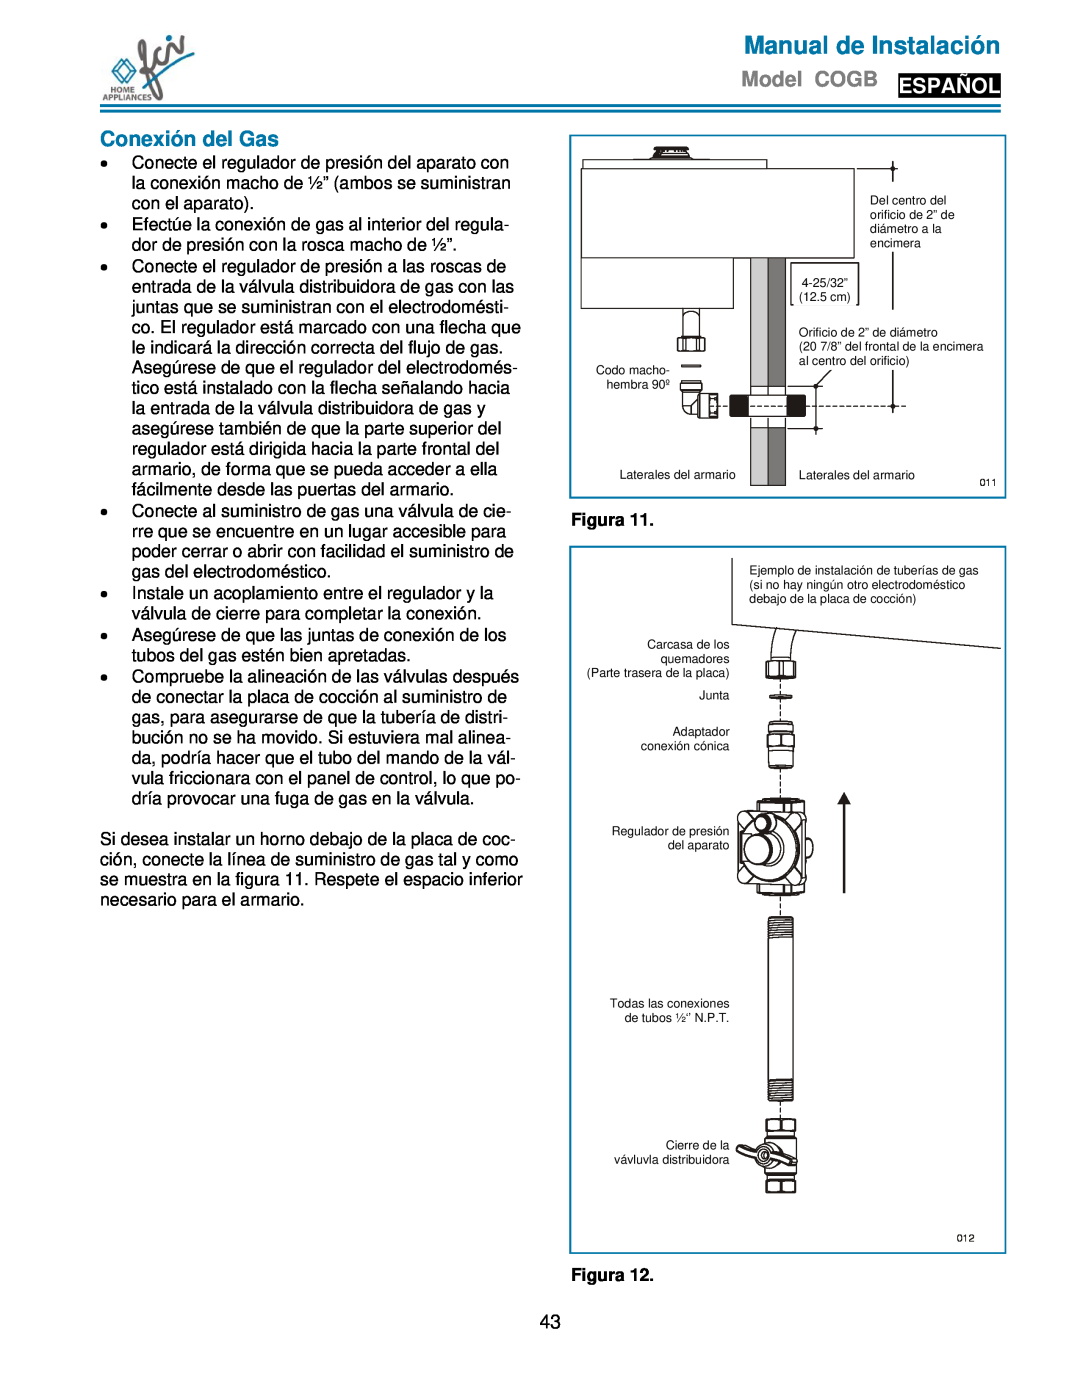 FCI Home Appliances COGB 33060/L/BL, COGB33060/BL Conexión del Gas, Manual de Instalación, Model COGB ESPAÑOL, Figura 